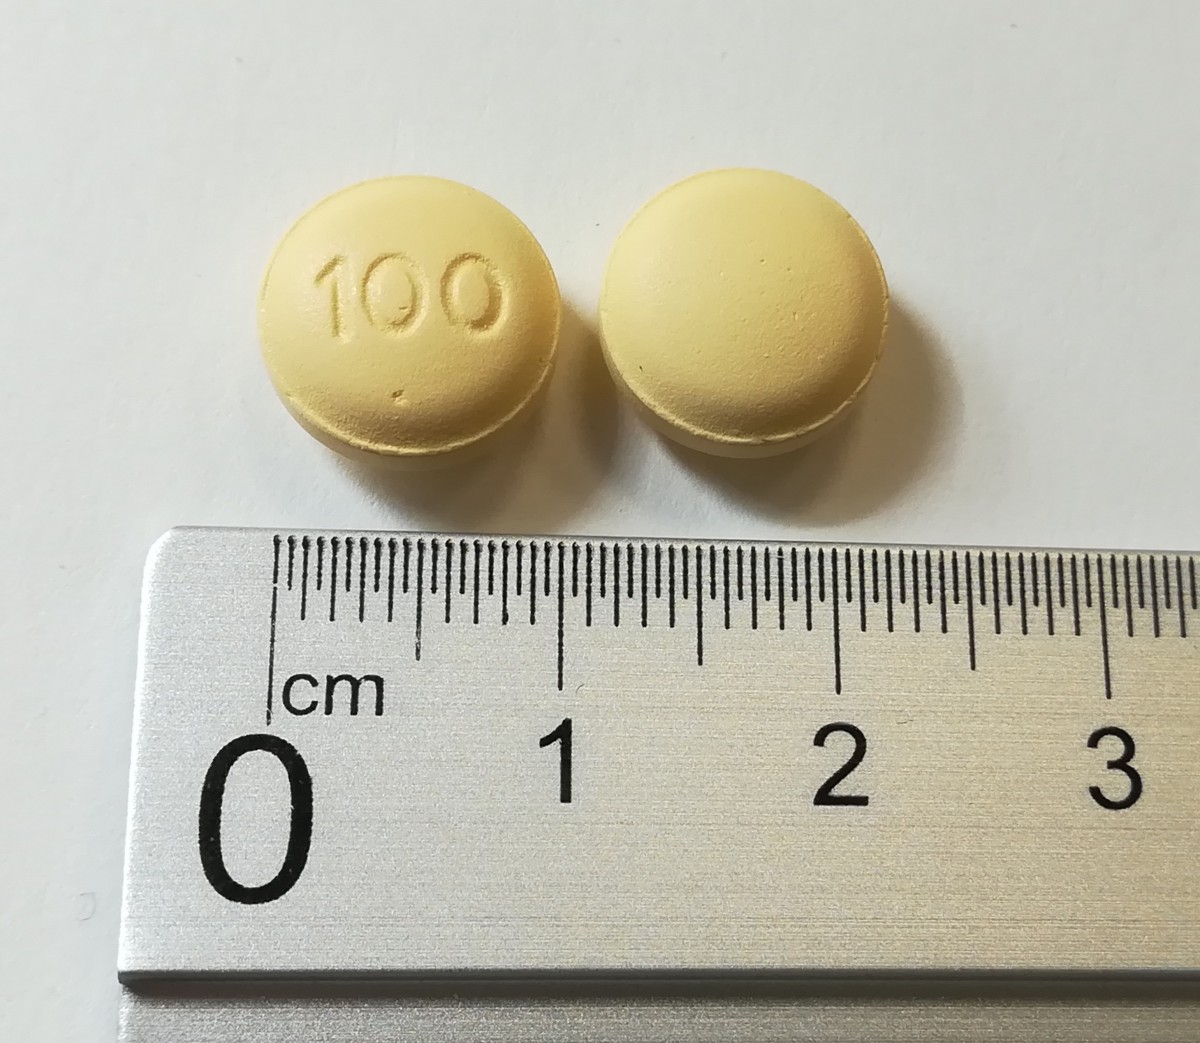 LOSARTAN/HIDROCLOROTIAZIDA NORMON 100/25 mg COMPRIMIDOS RECUBIERTOS CON PELICULA EFG, 28 comprimidos fotografía de la forma farmacéutica.